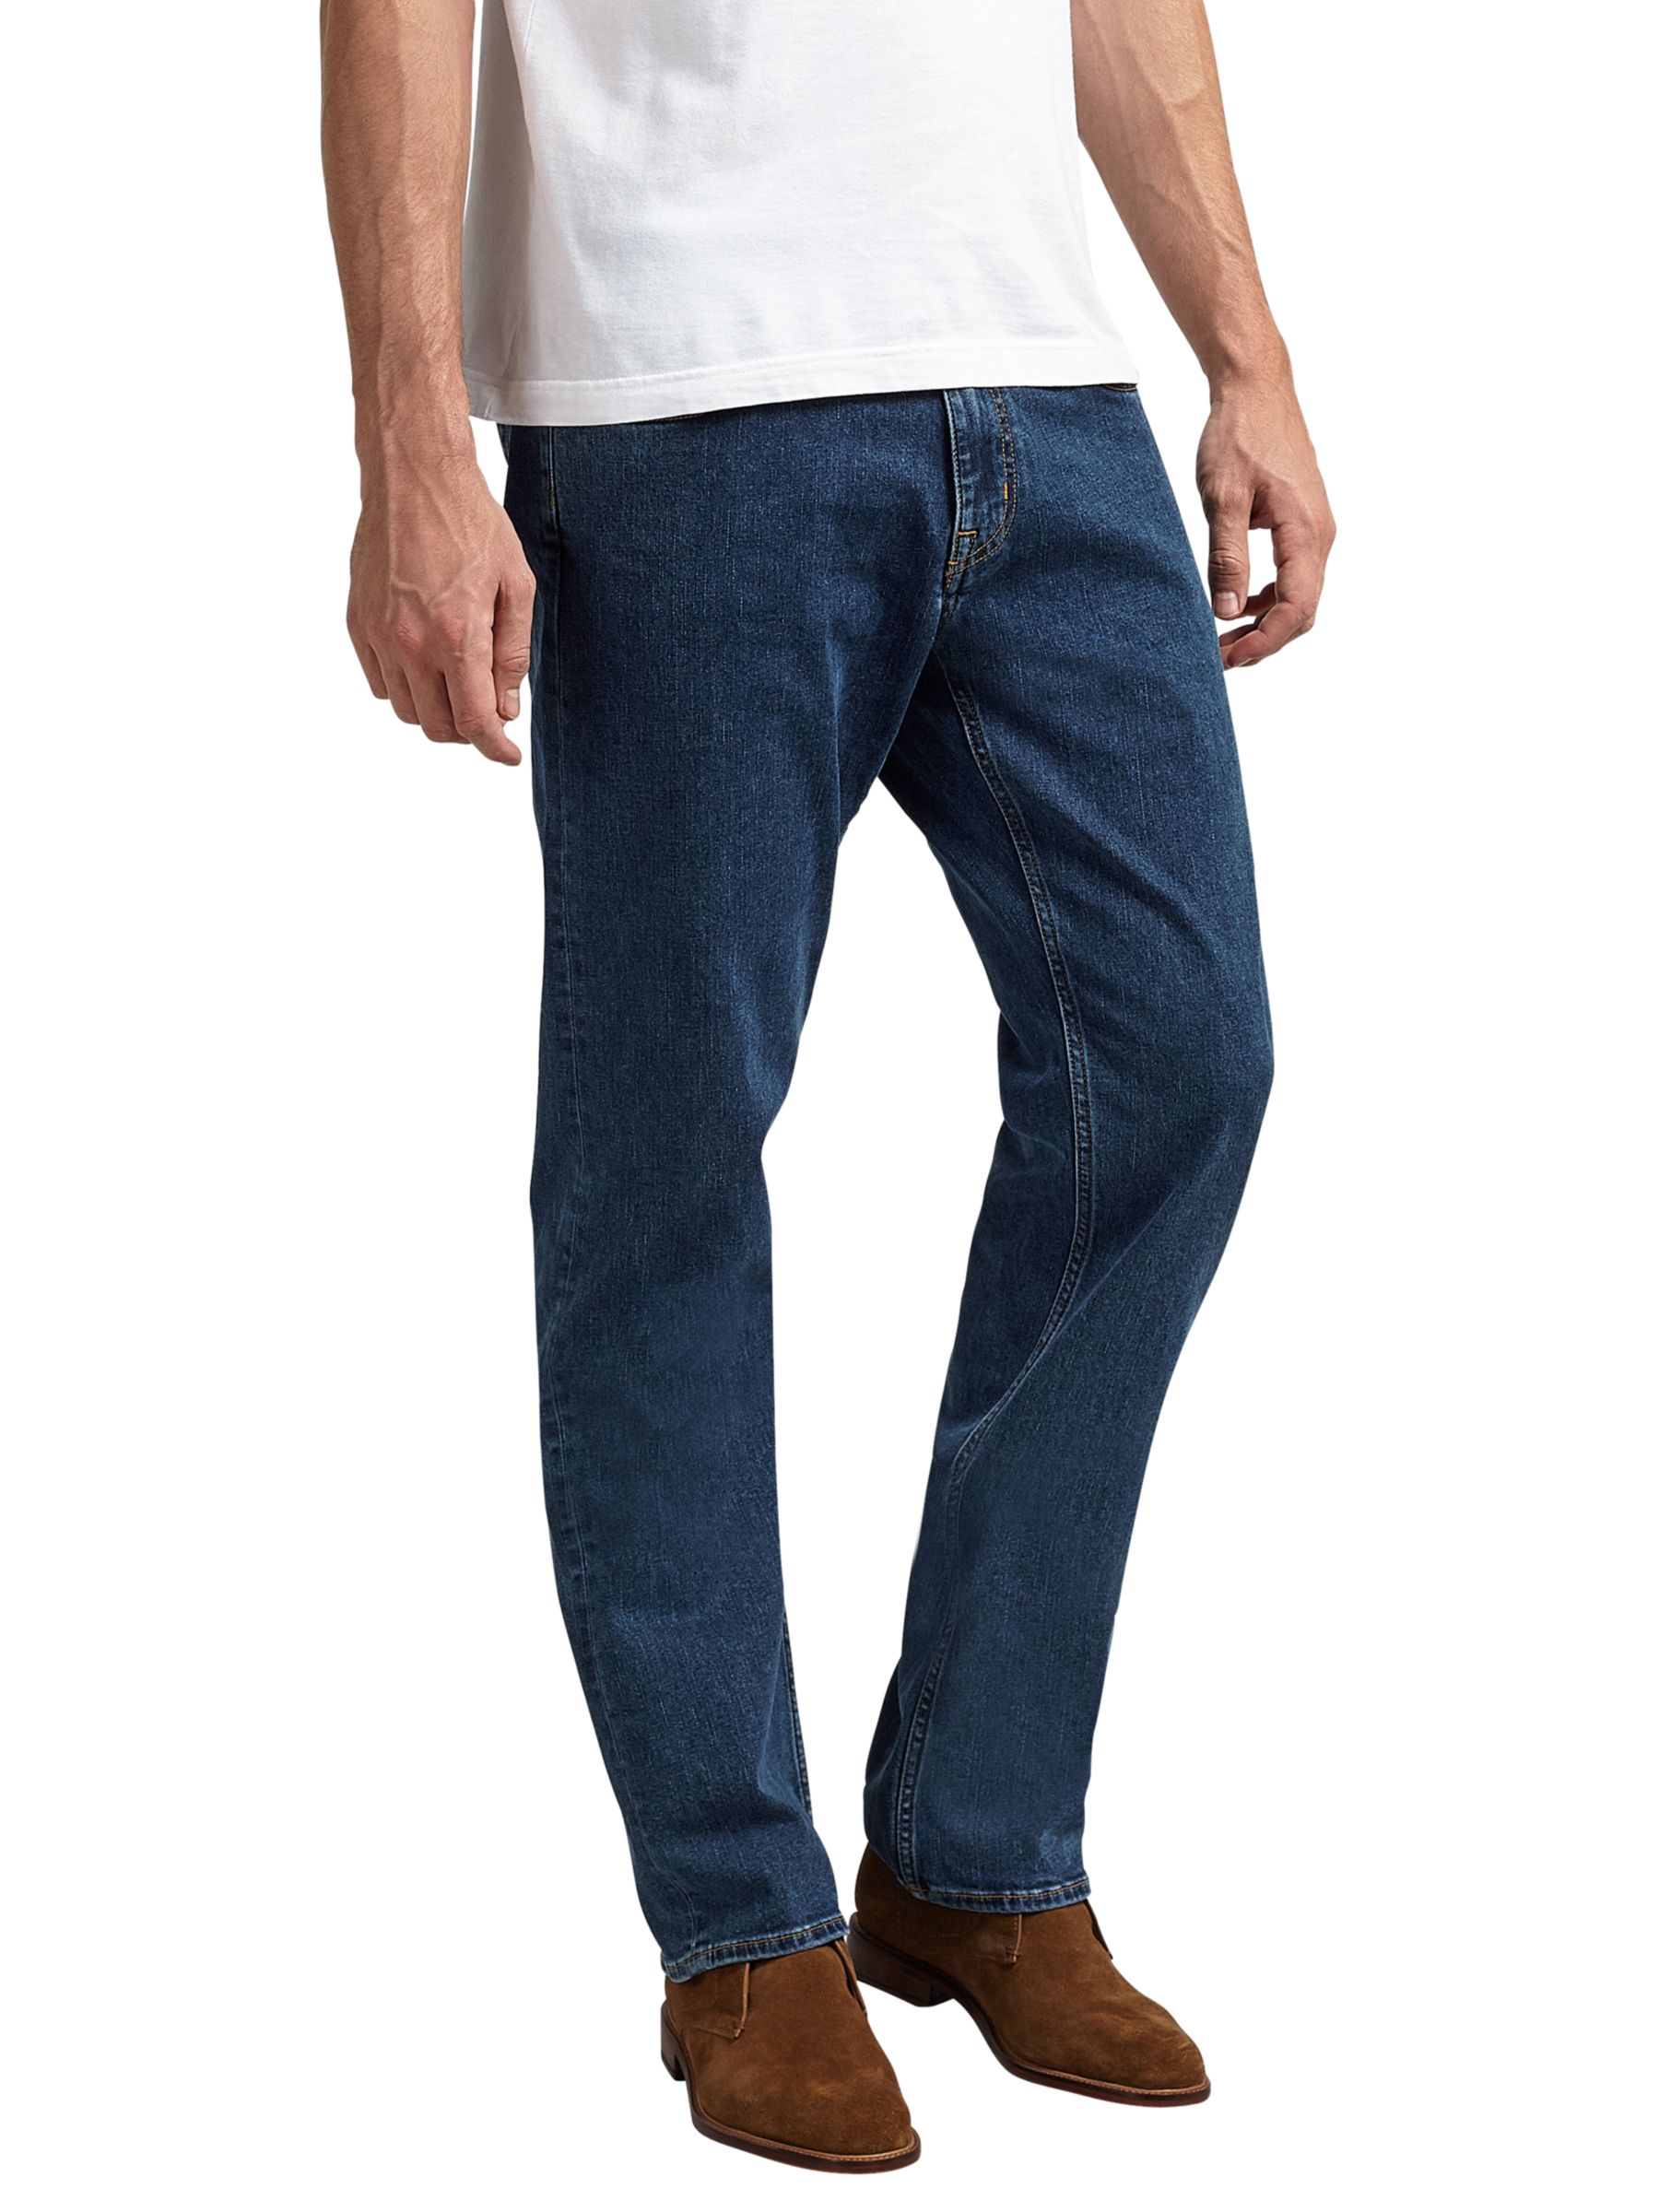 Dialoog heel veel laten we het doen GANT 11 oz Comfort Regular Straight Jeans, , 32S